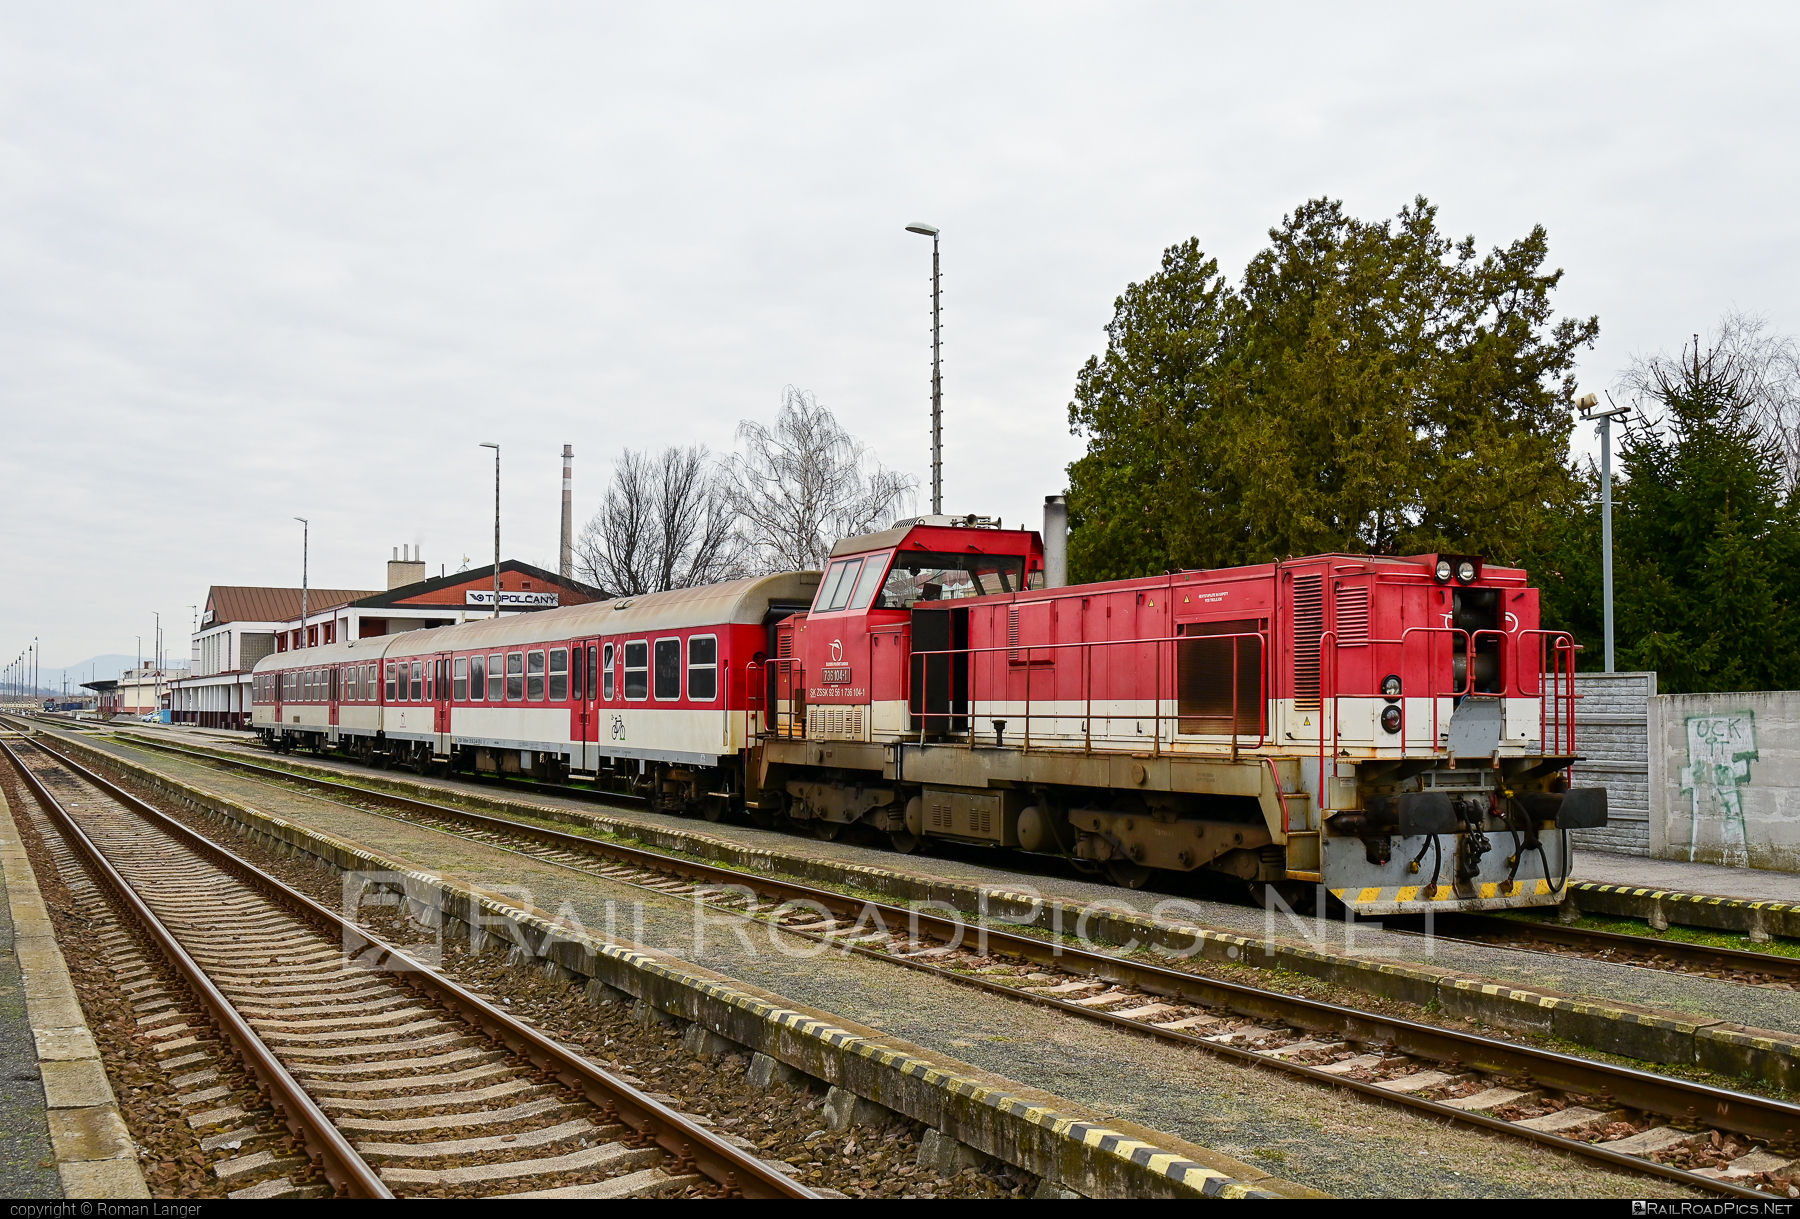 ŽOS Zvolen Class 736 - 736 104-1 operated by Železničná Spoločnost' Slovensko, a.s. #ZeleznicnaSpolocnostSlovensko #locomotive736 #zoszvolen #zoszvolen736 #zssk